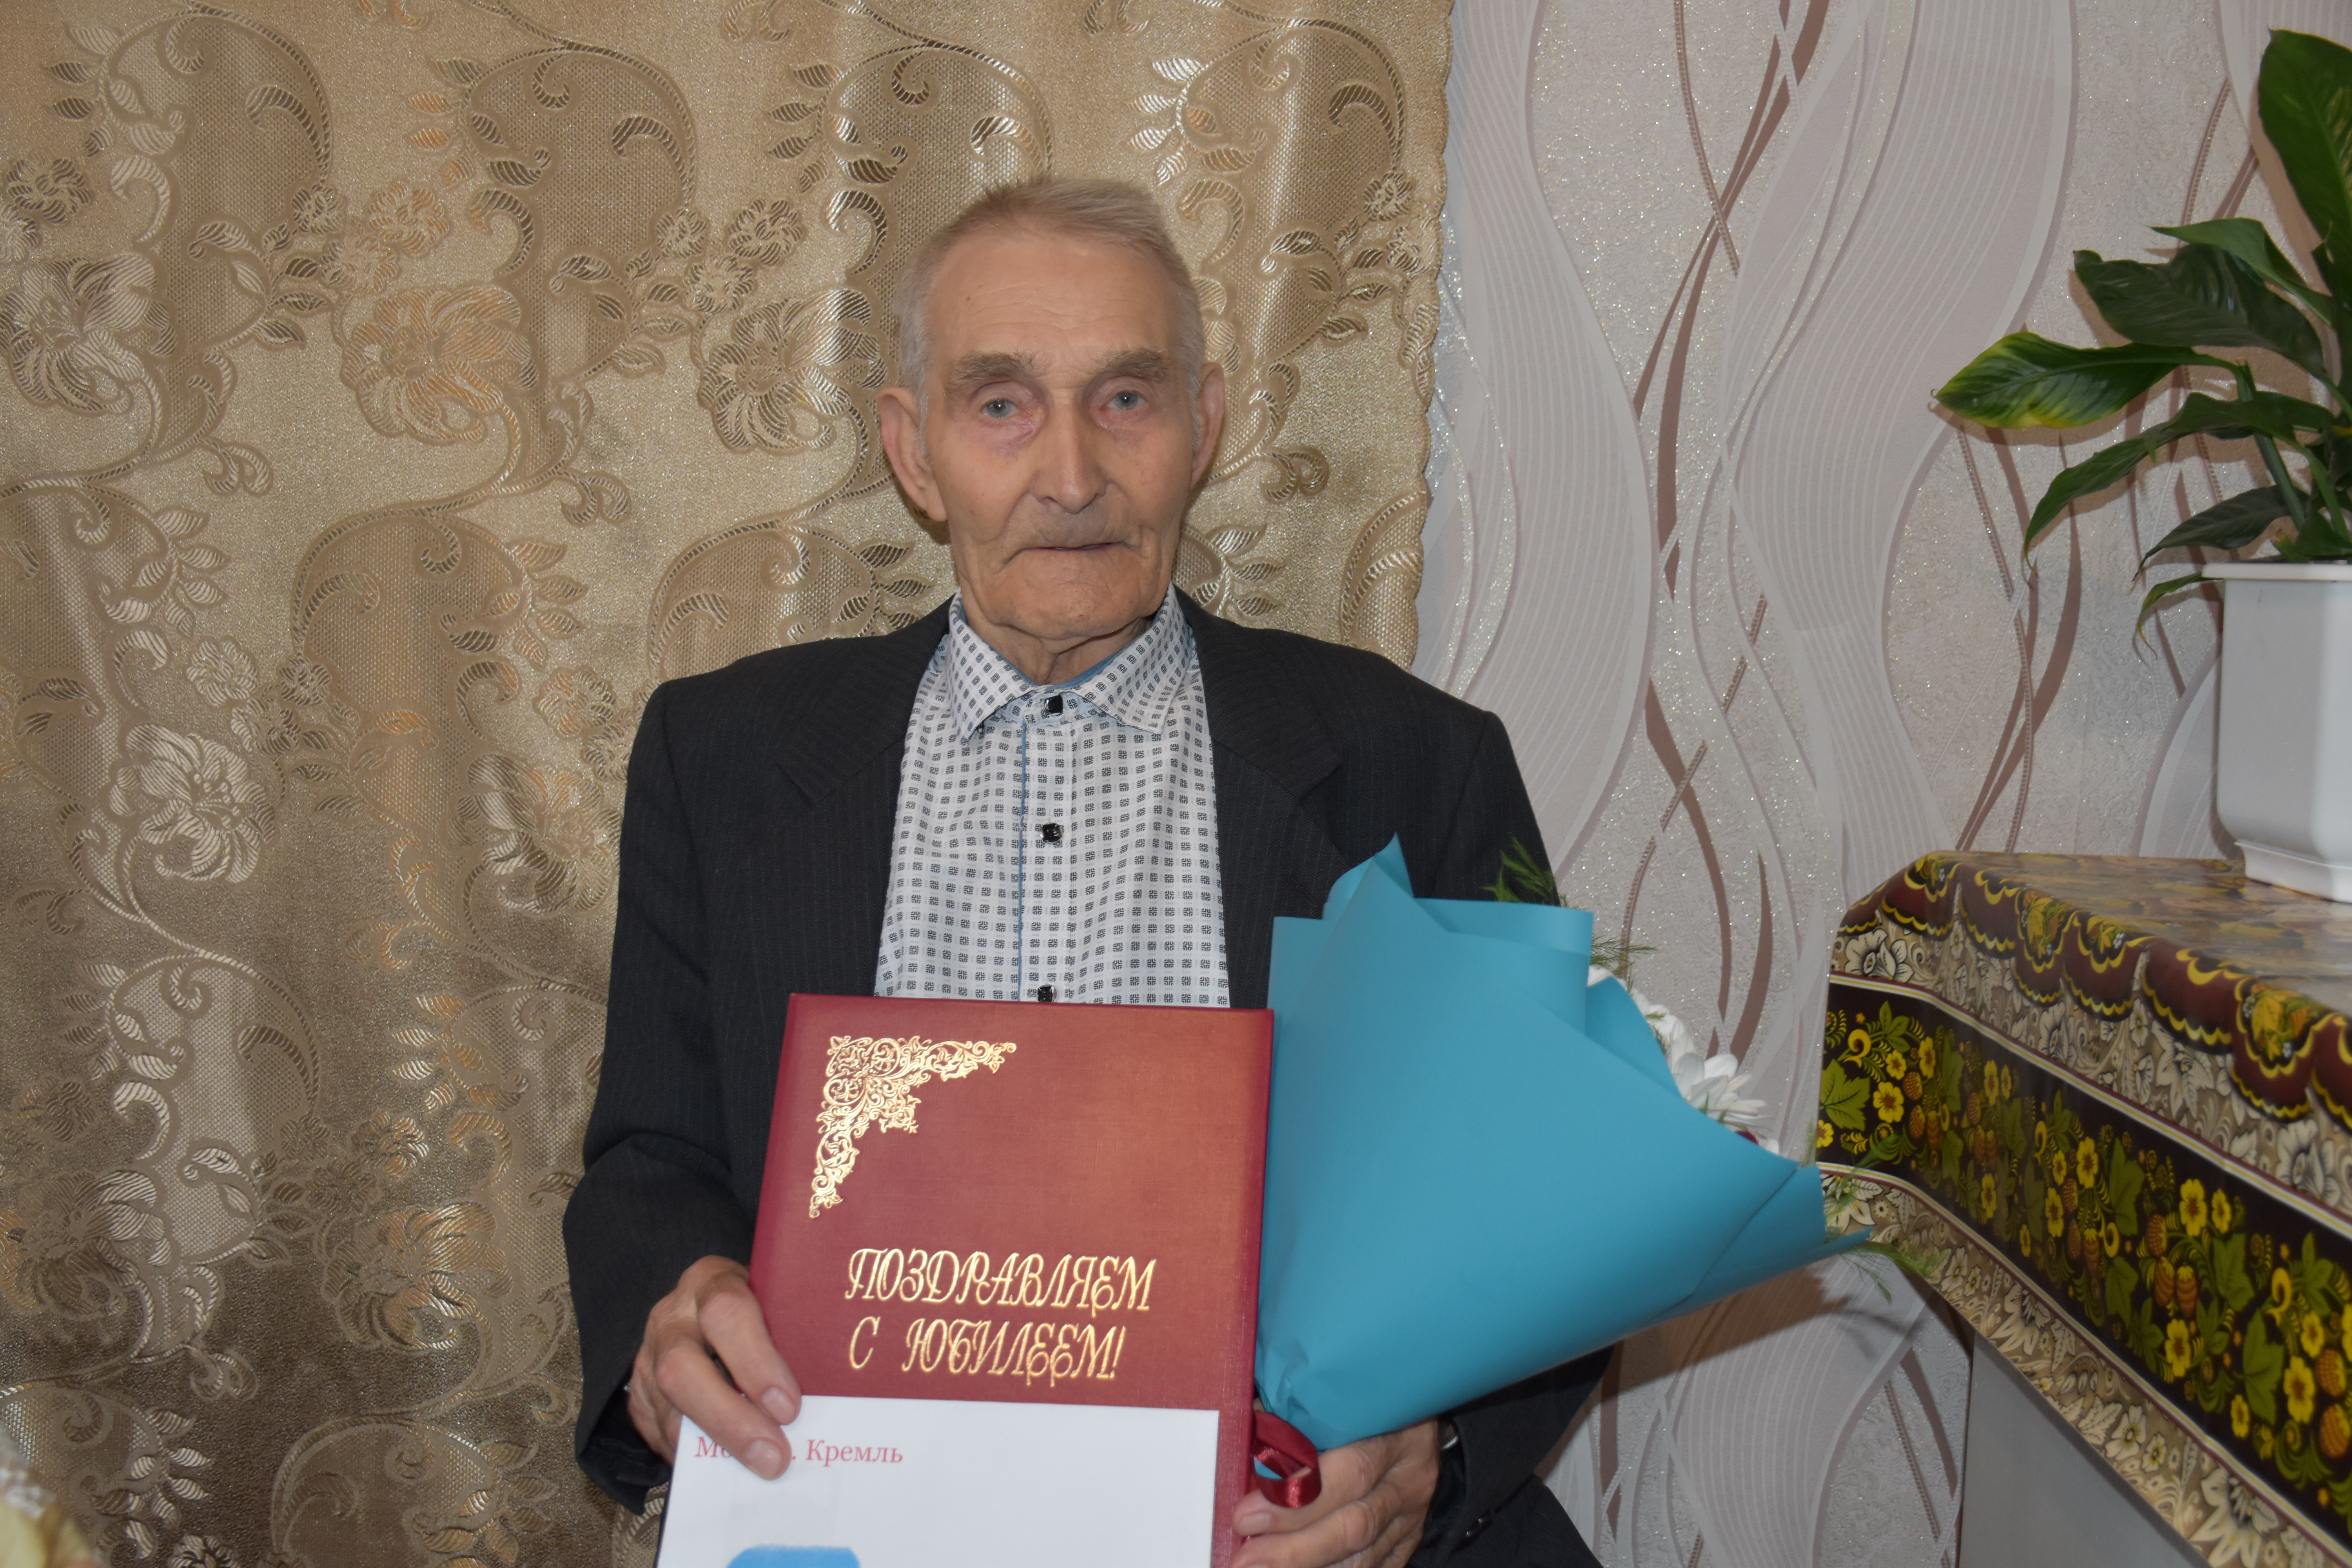 Сегодня свой 90-летний Юбилей празднует житель поселка Волоконовка Лыгин Алексей Владимирович.